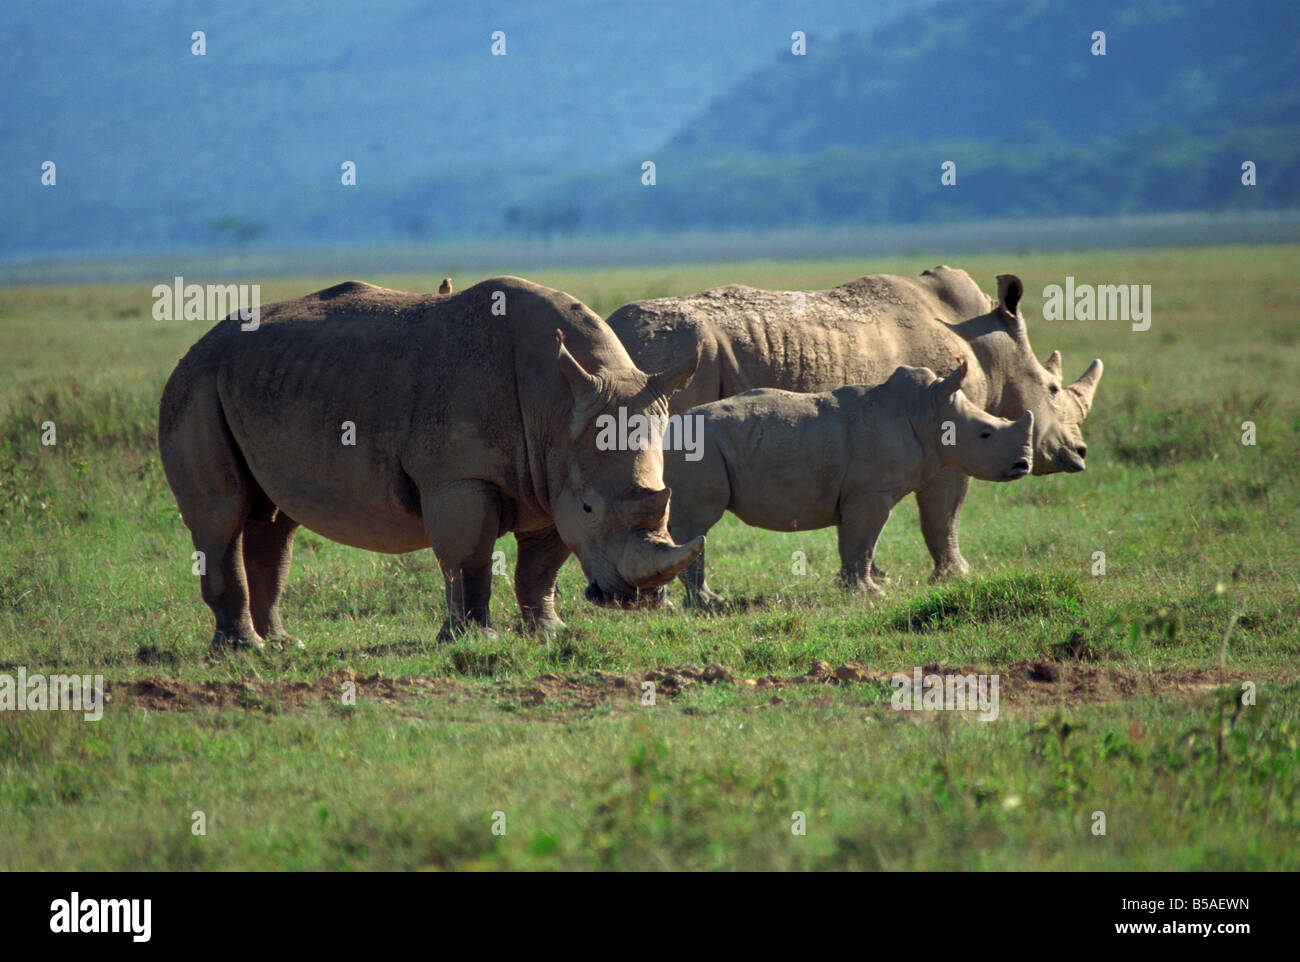 Famille rhinocéros noir du Parc du Lac Nakuru Kenya Afrique Afrique de l'Est Banque D'Images